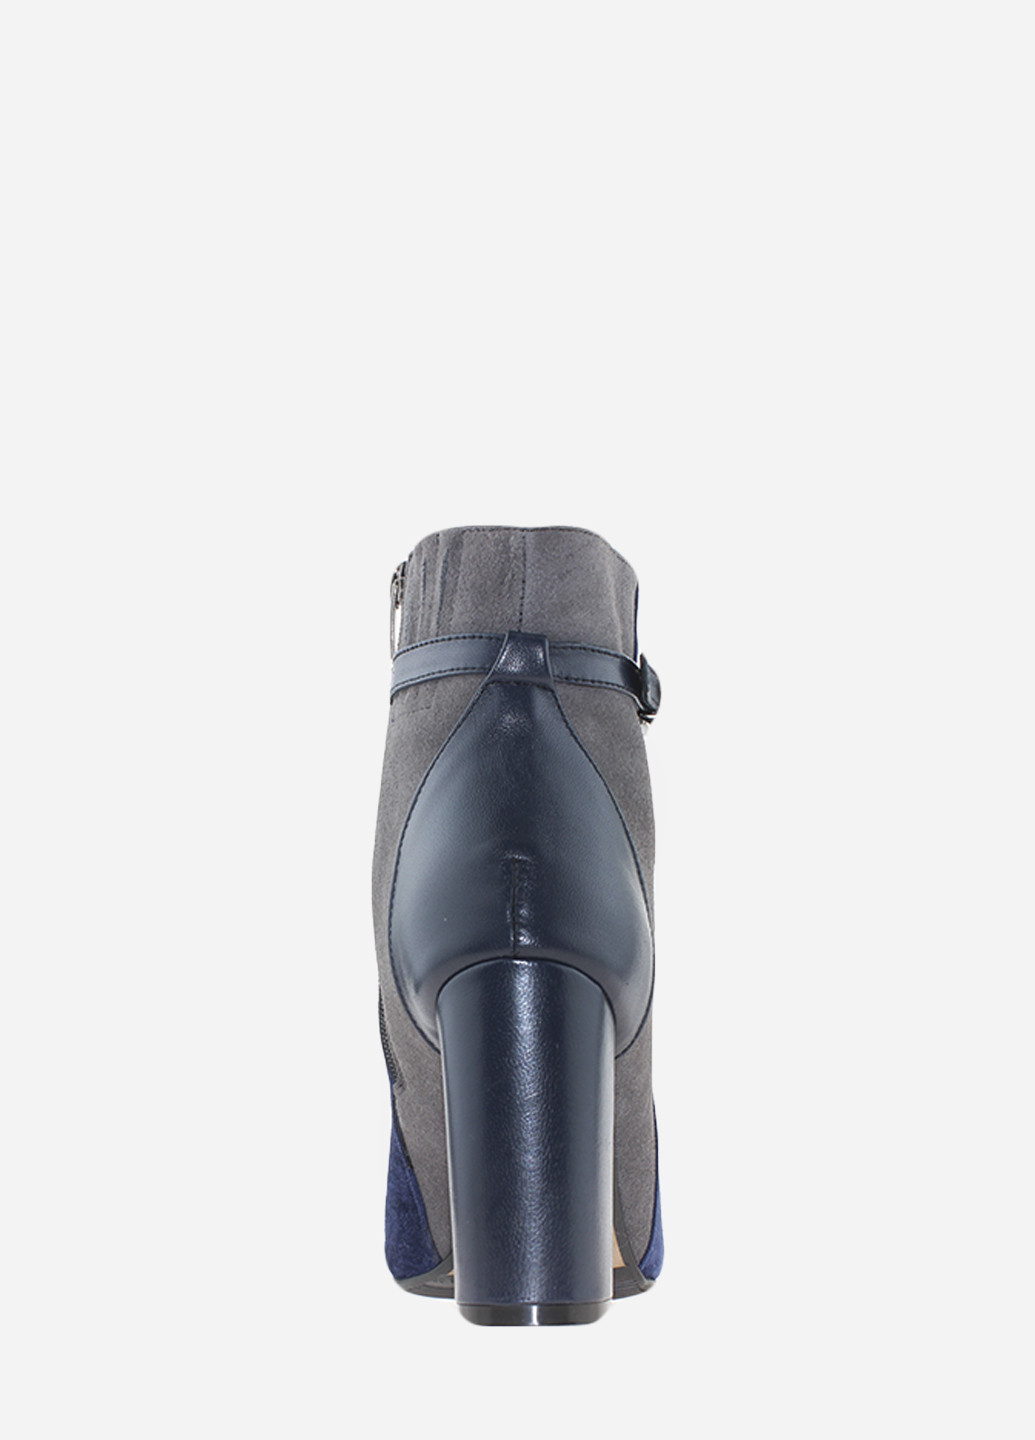 Осенние ботинки rd19309 синий Dominel из натуральной замши